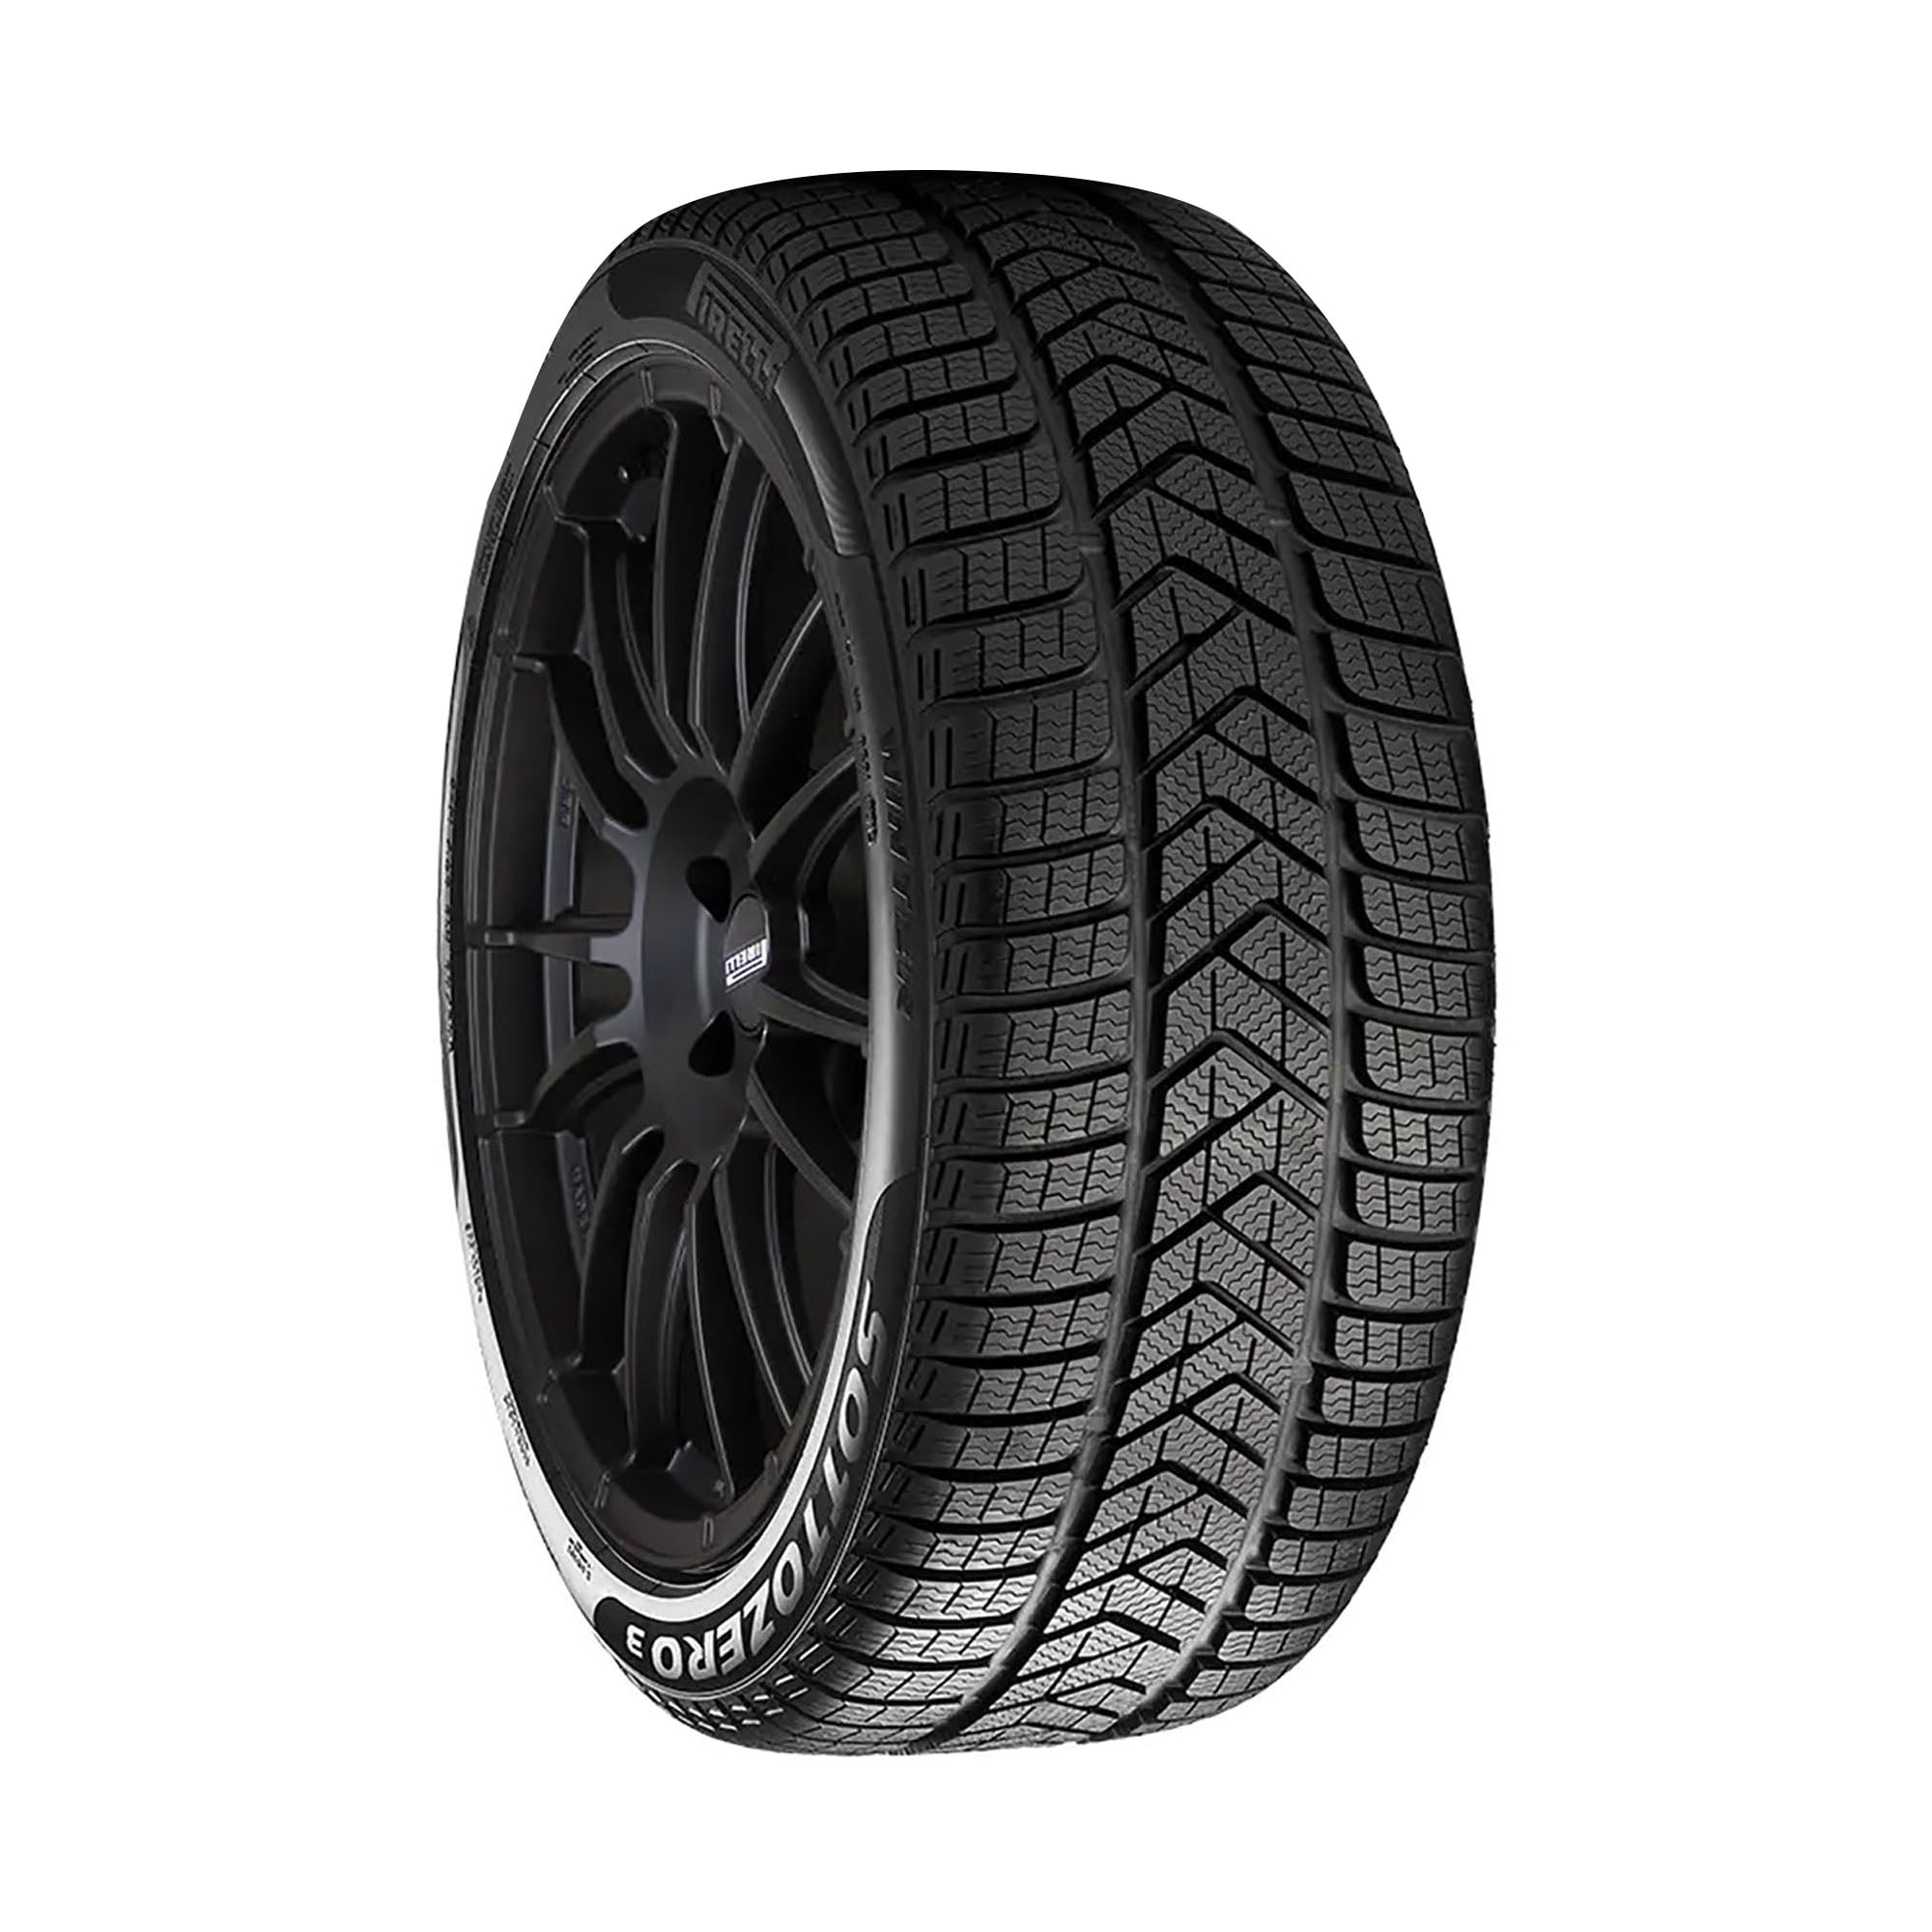 Pirelli Winter Sottozero 3 Winter 245/35R21 96W XL Passenger Tire